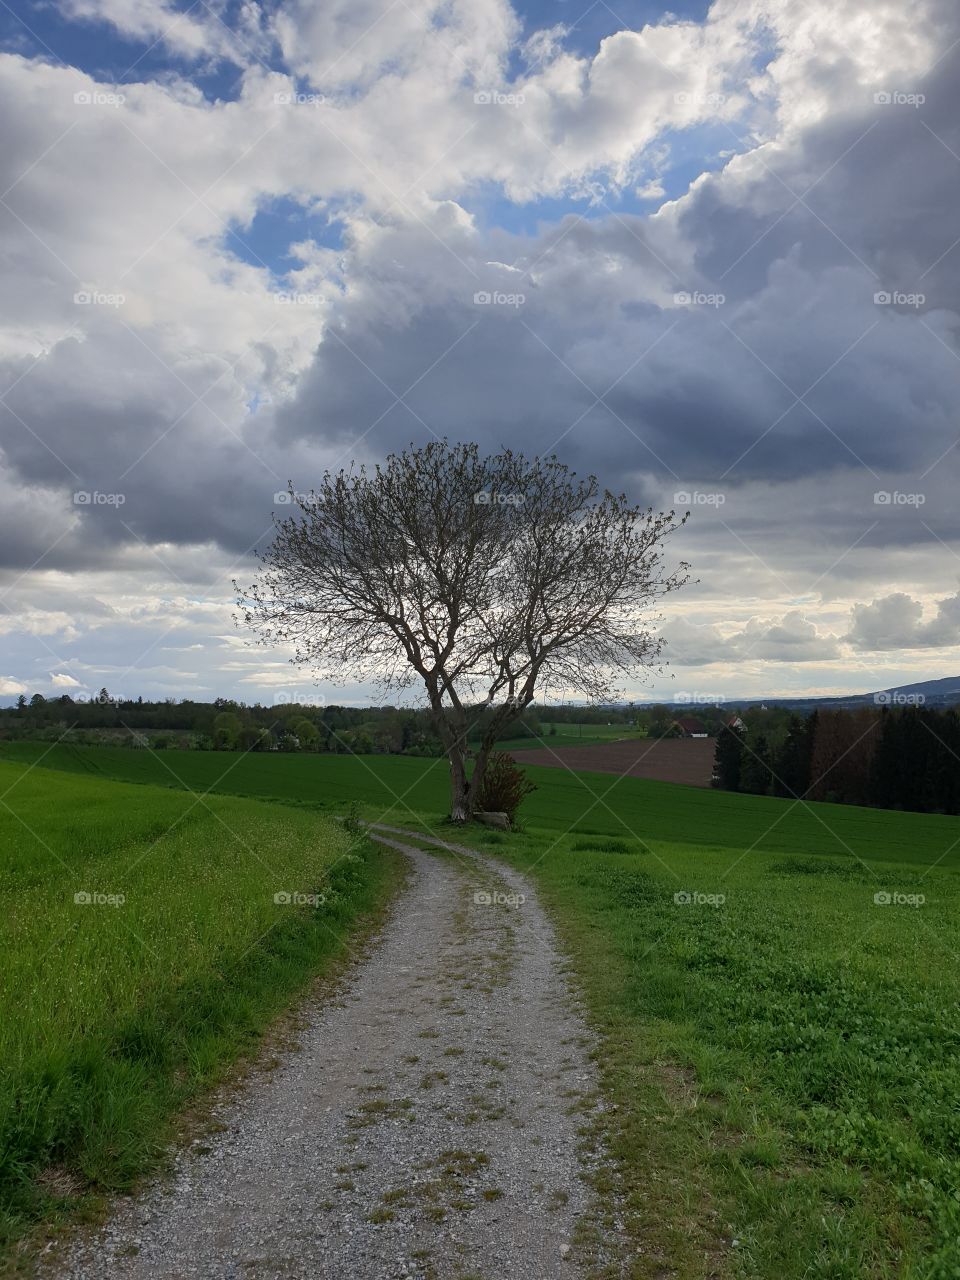 Tree rural clouds sky